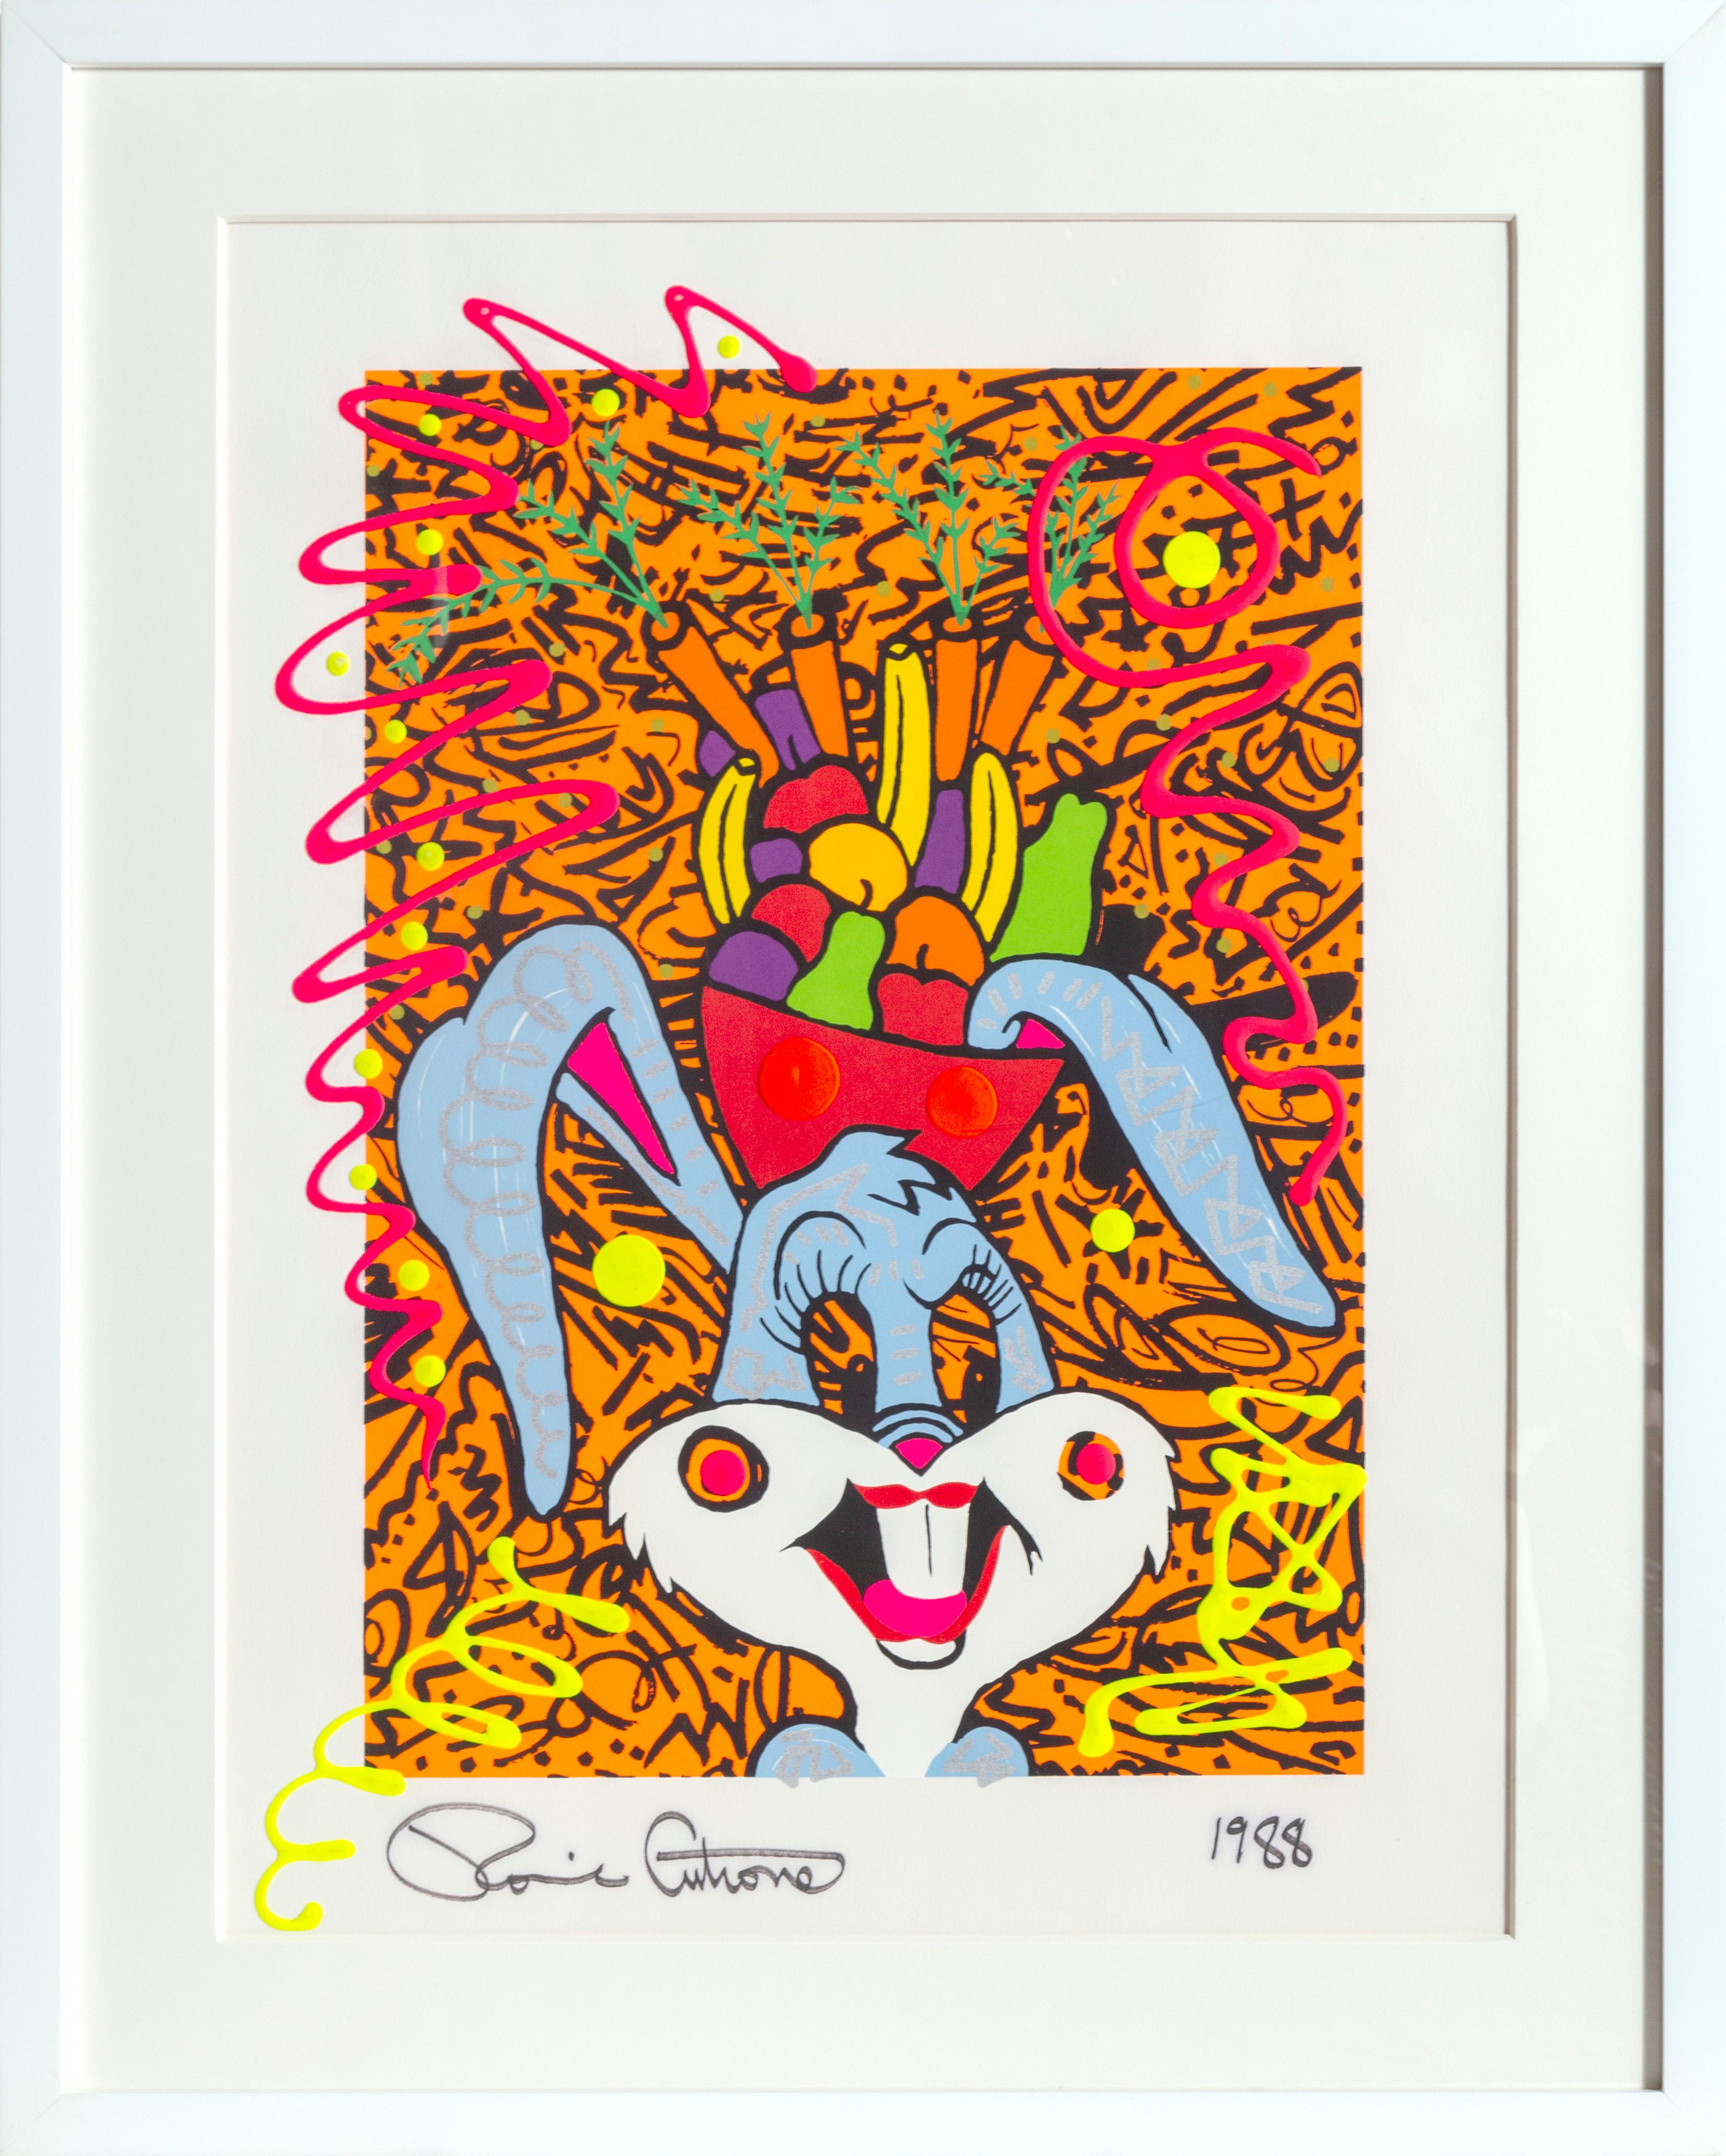 Künstler: Ronnie Cutrone, Amerikaner (1948 - )
Titel: Bugsy Miranda
Jahr: 1988
Medium: Serigraphie mit Acrylfarbe und Marker, signiert und datiert unten
Größe: 30 Zoll x 22,5 Zoll (76,2 cm x 57,15 cm)
Rahmengröße: 34,5 x 27,75 Zoll